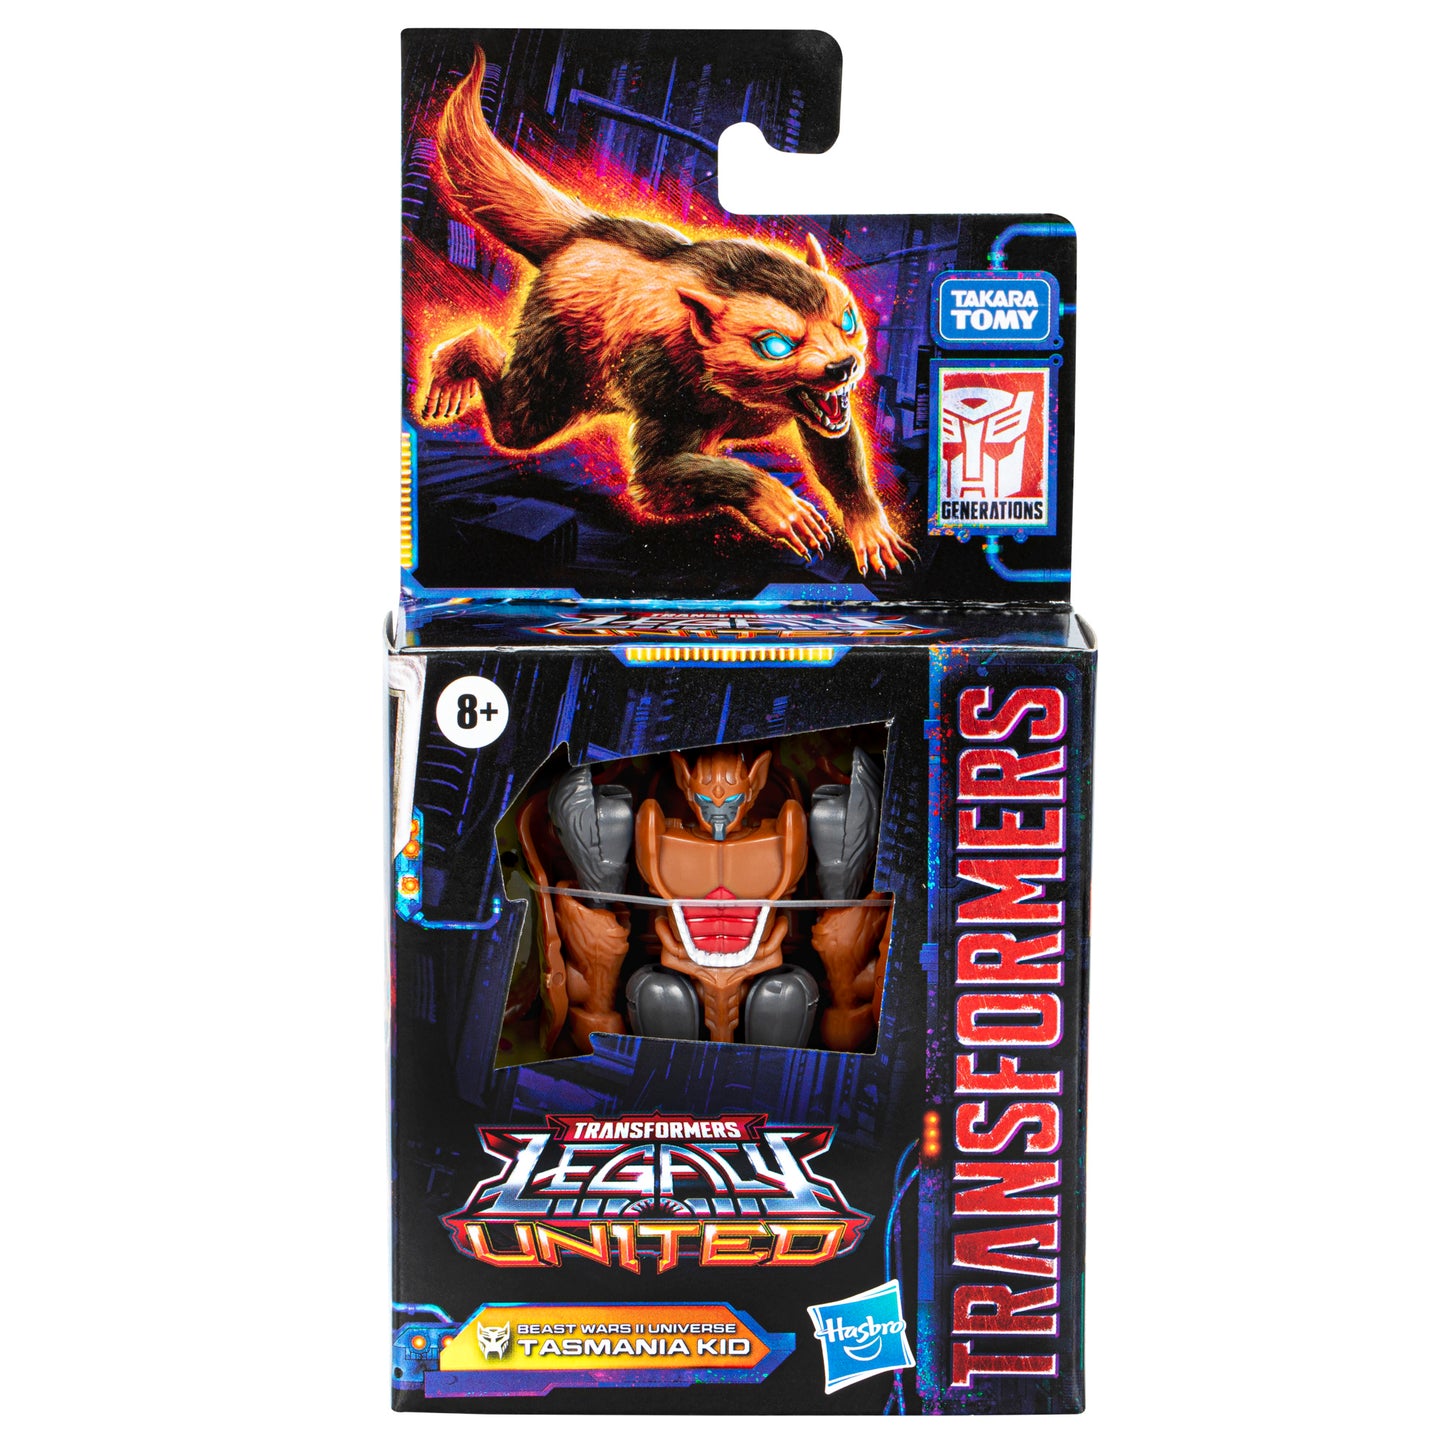 Transformers Legacy United Core Beast Wars II Universe Tasmania Kid 3.5” Action Figure, 8+